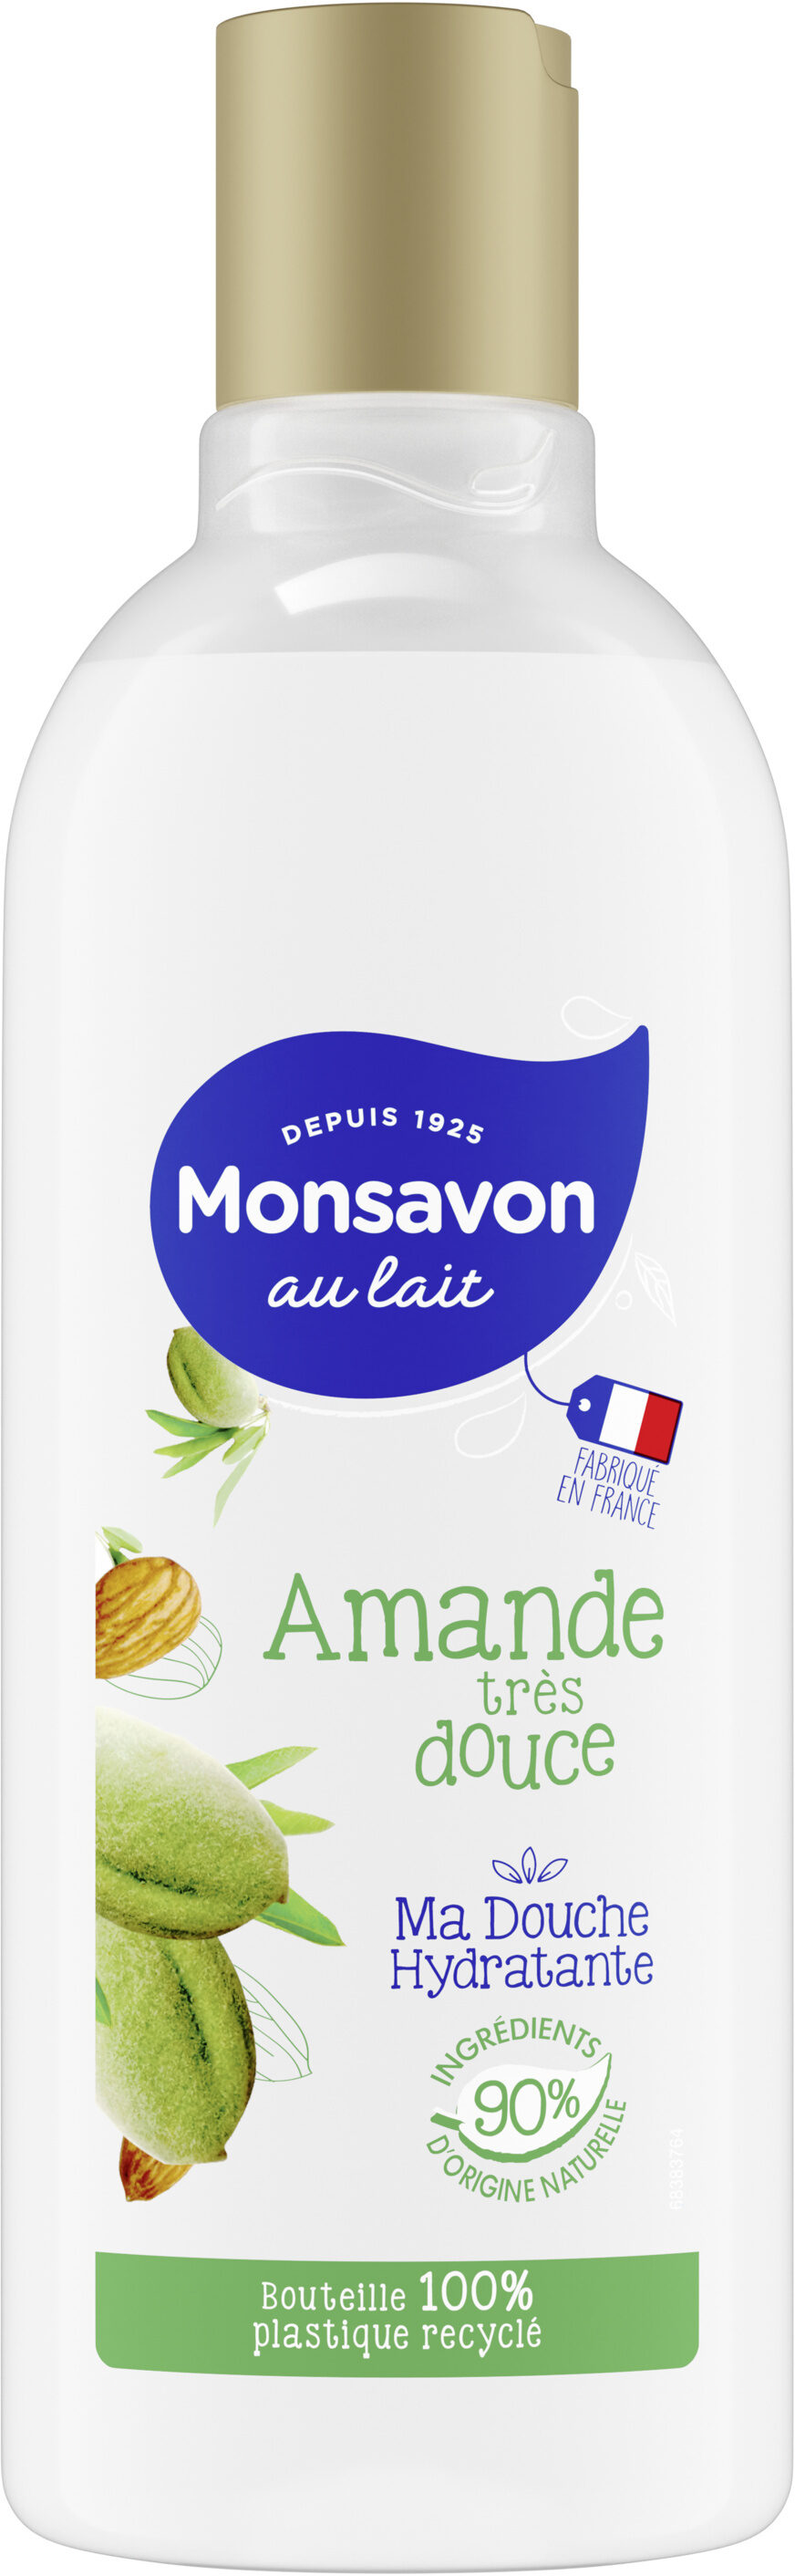 Monsavon Gel Douche Amande Très Douce 300ml - Produit - fr